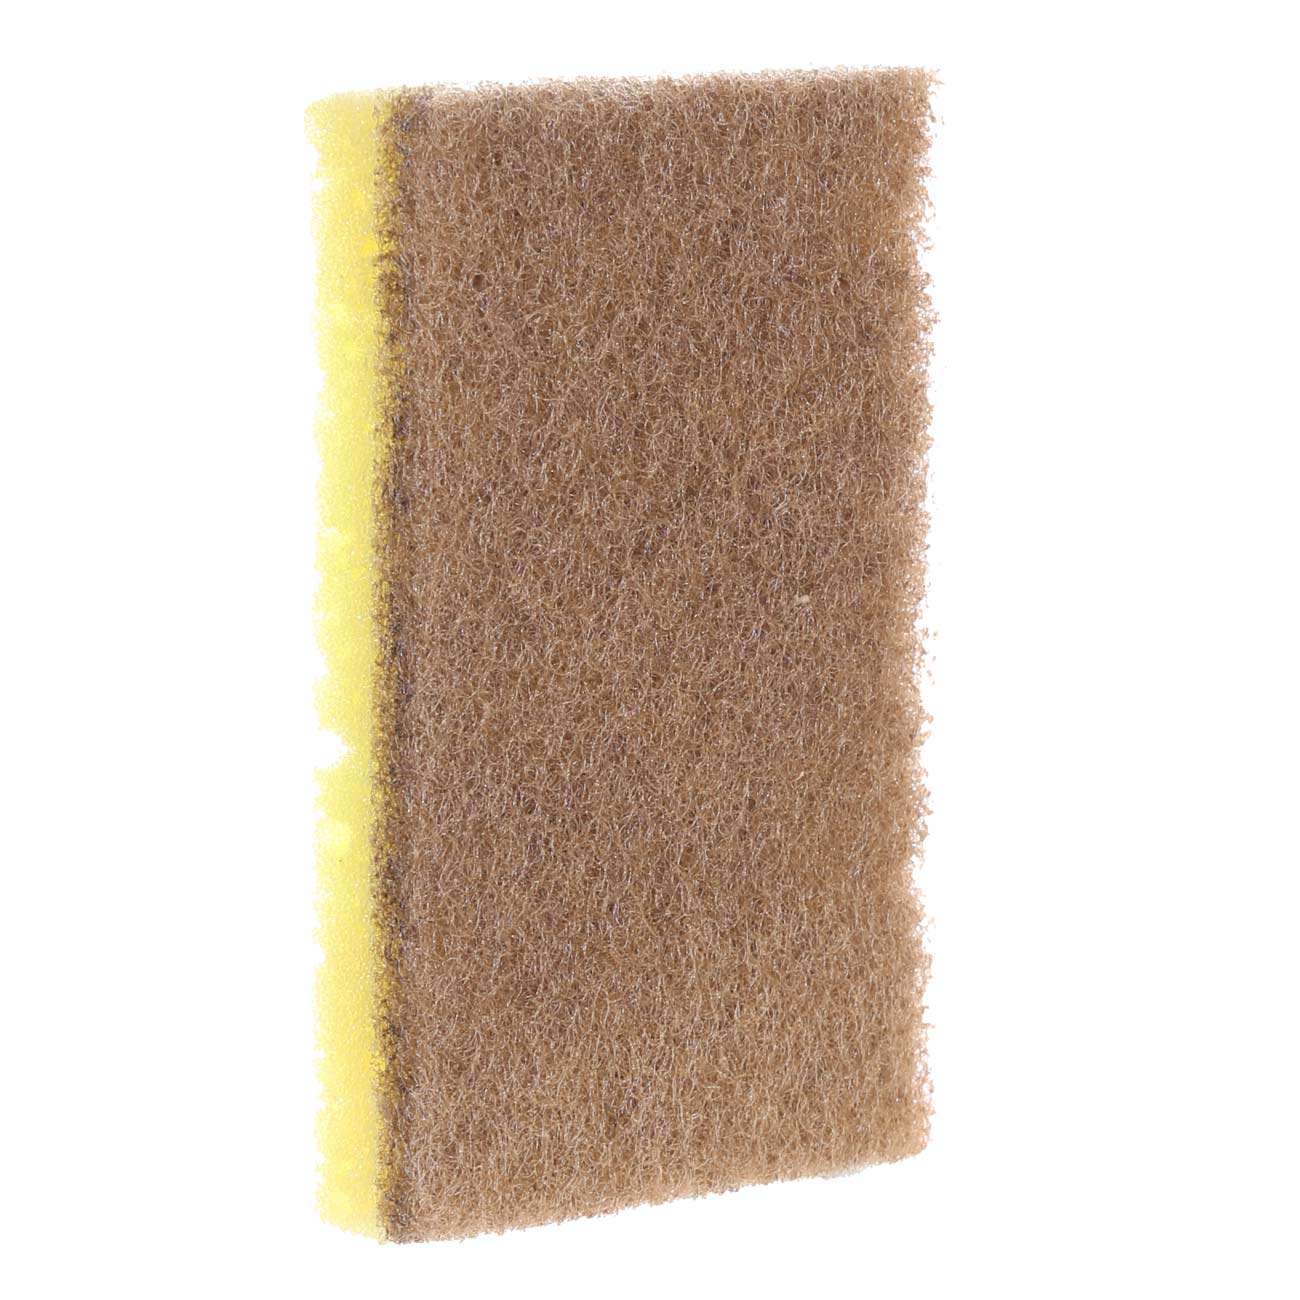 Dish washing sponge, 11x7 cm, 2 pcs, wood fiber/sisal, beige, Green clean изображение № 2